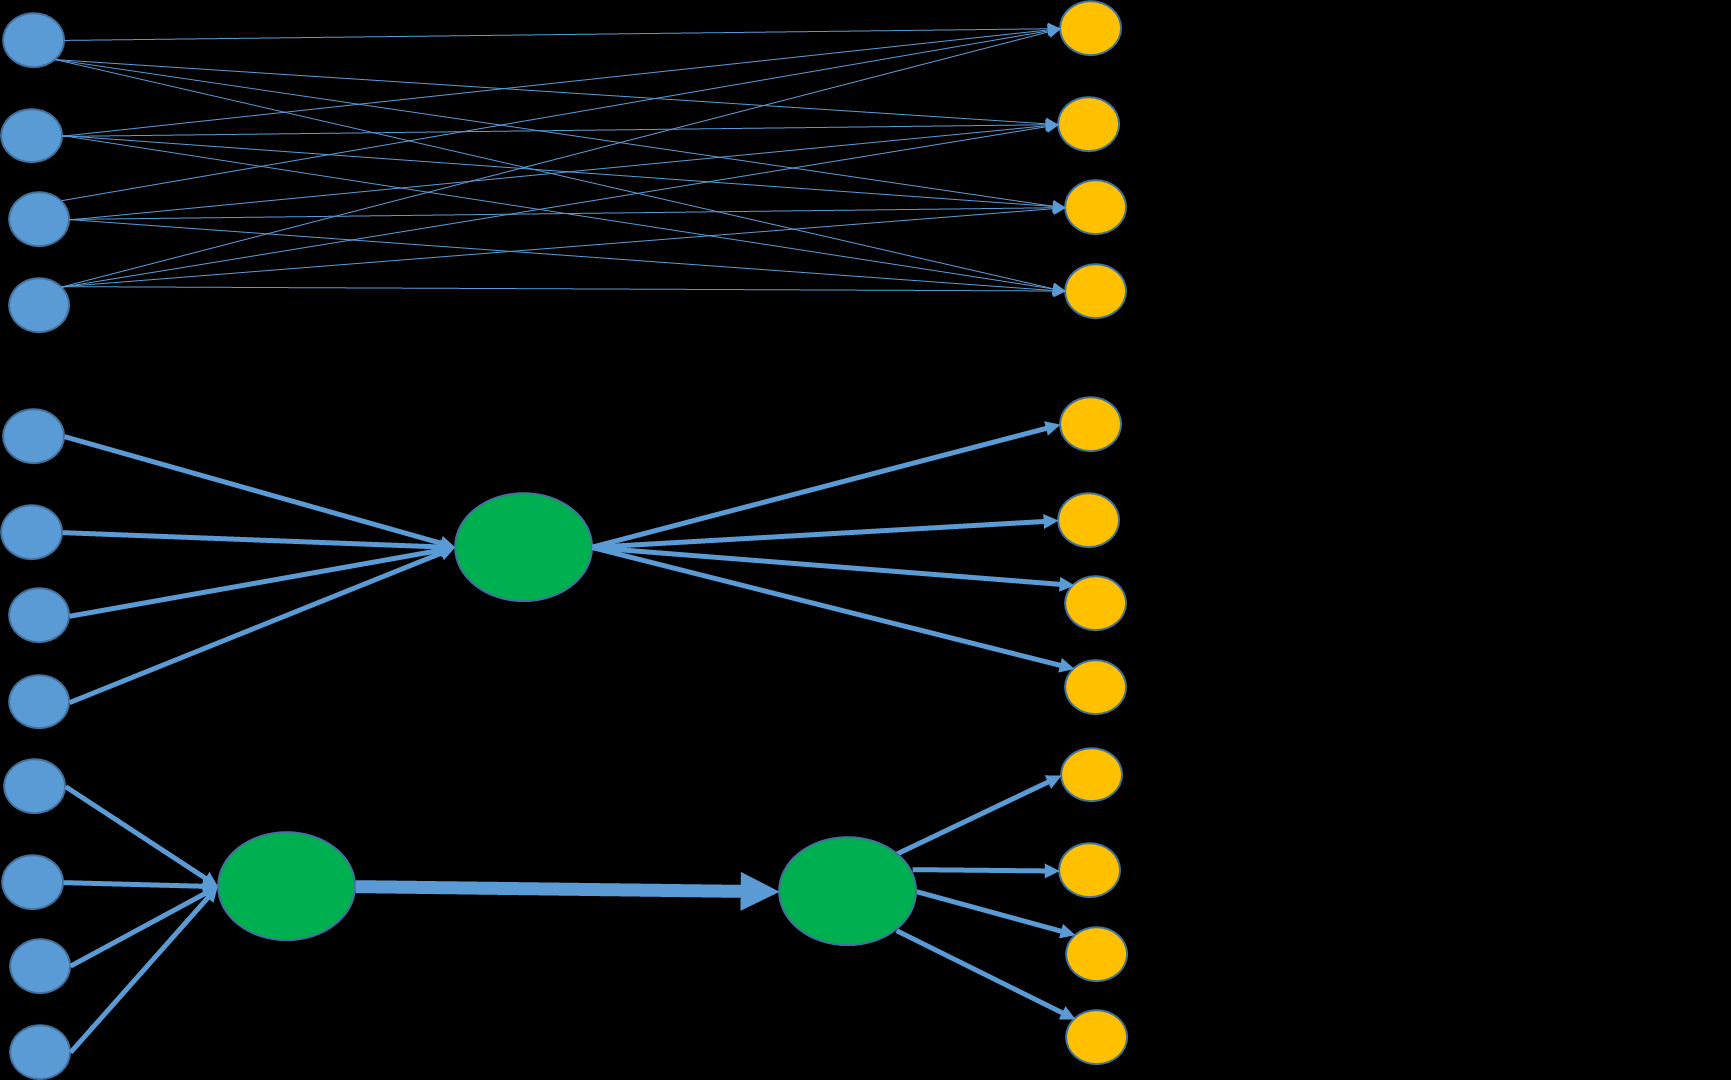 Vi kan som et eksempel se på de tre ulike konfigurasjonene for transportnettverk som er vist i figur 2.1. Figur 2.